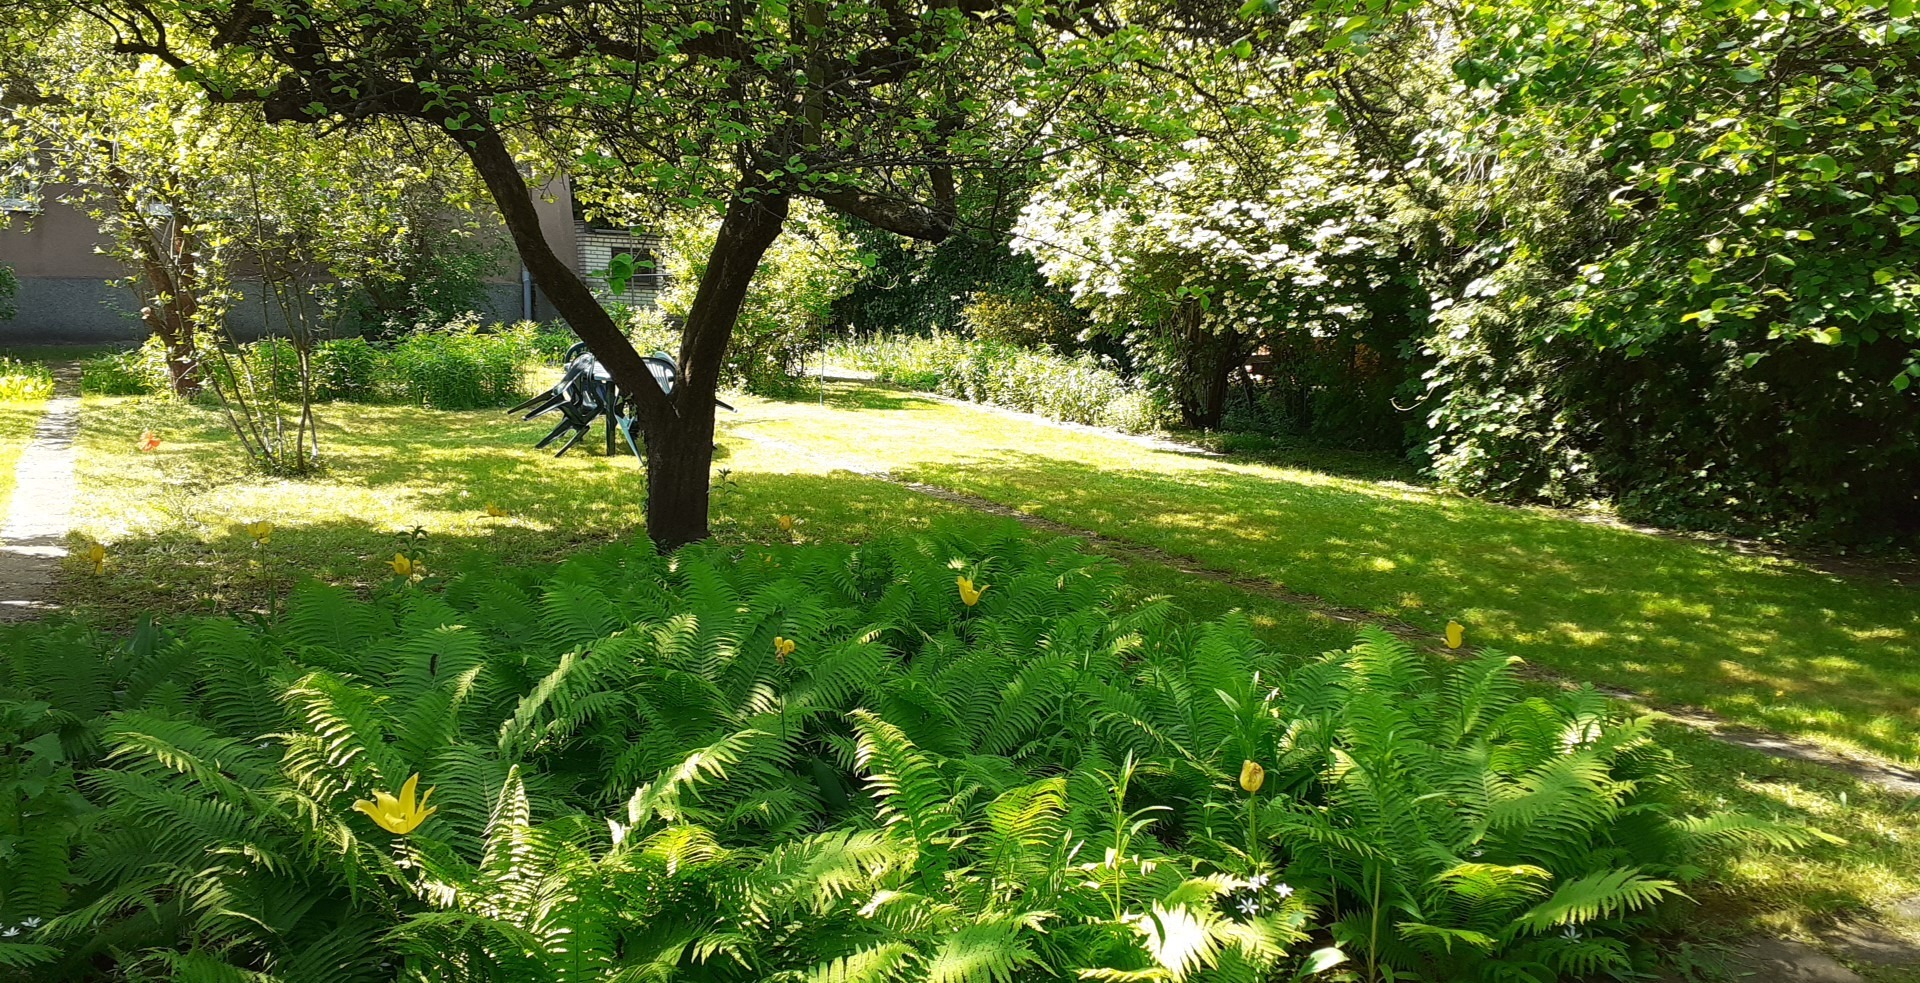 Teren zielony, trwa, paprocie, drzewa. W oddali na trawie stoi plastikowy stół i krzesła.